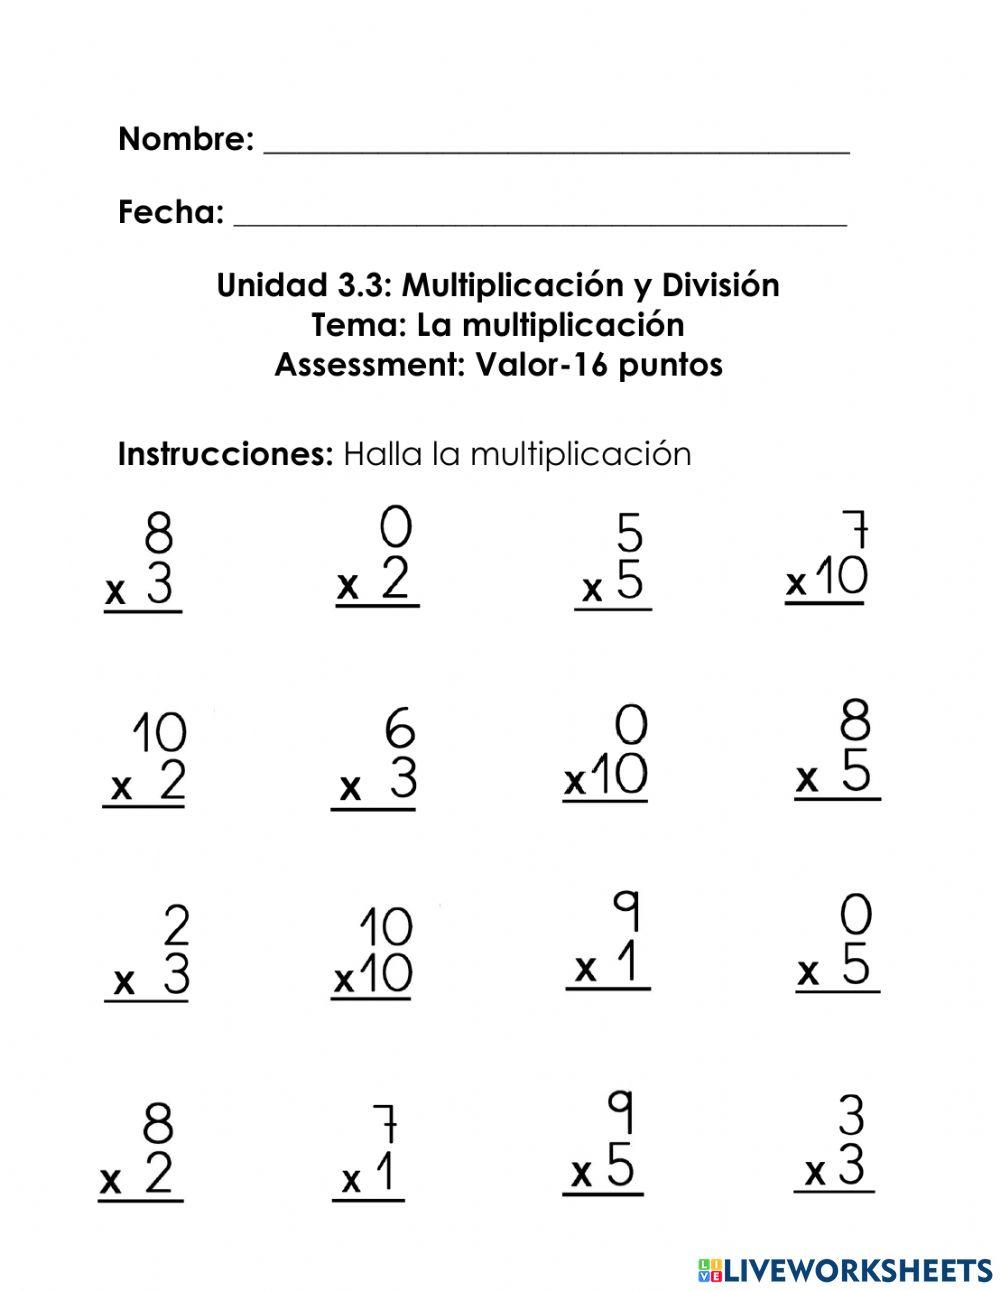 Multiplicacion Tabla del 0, 1, 2, 3, 5 y 10